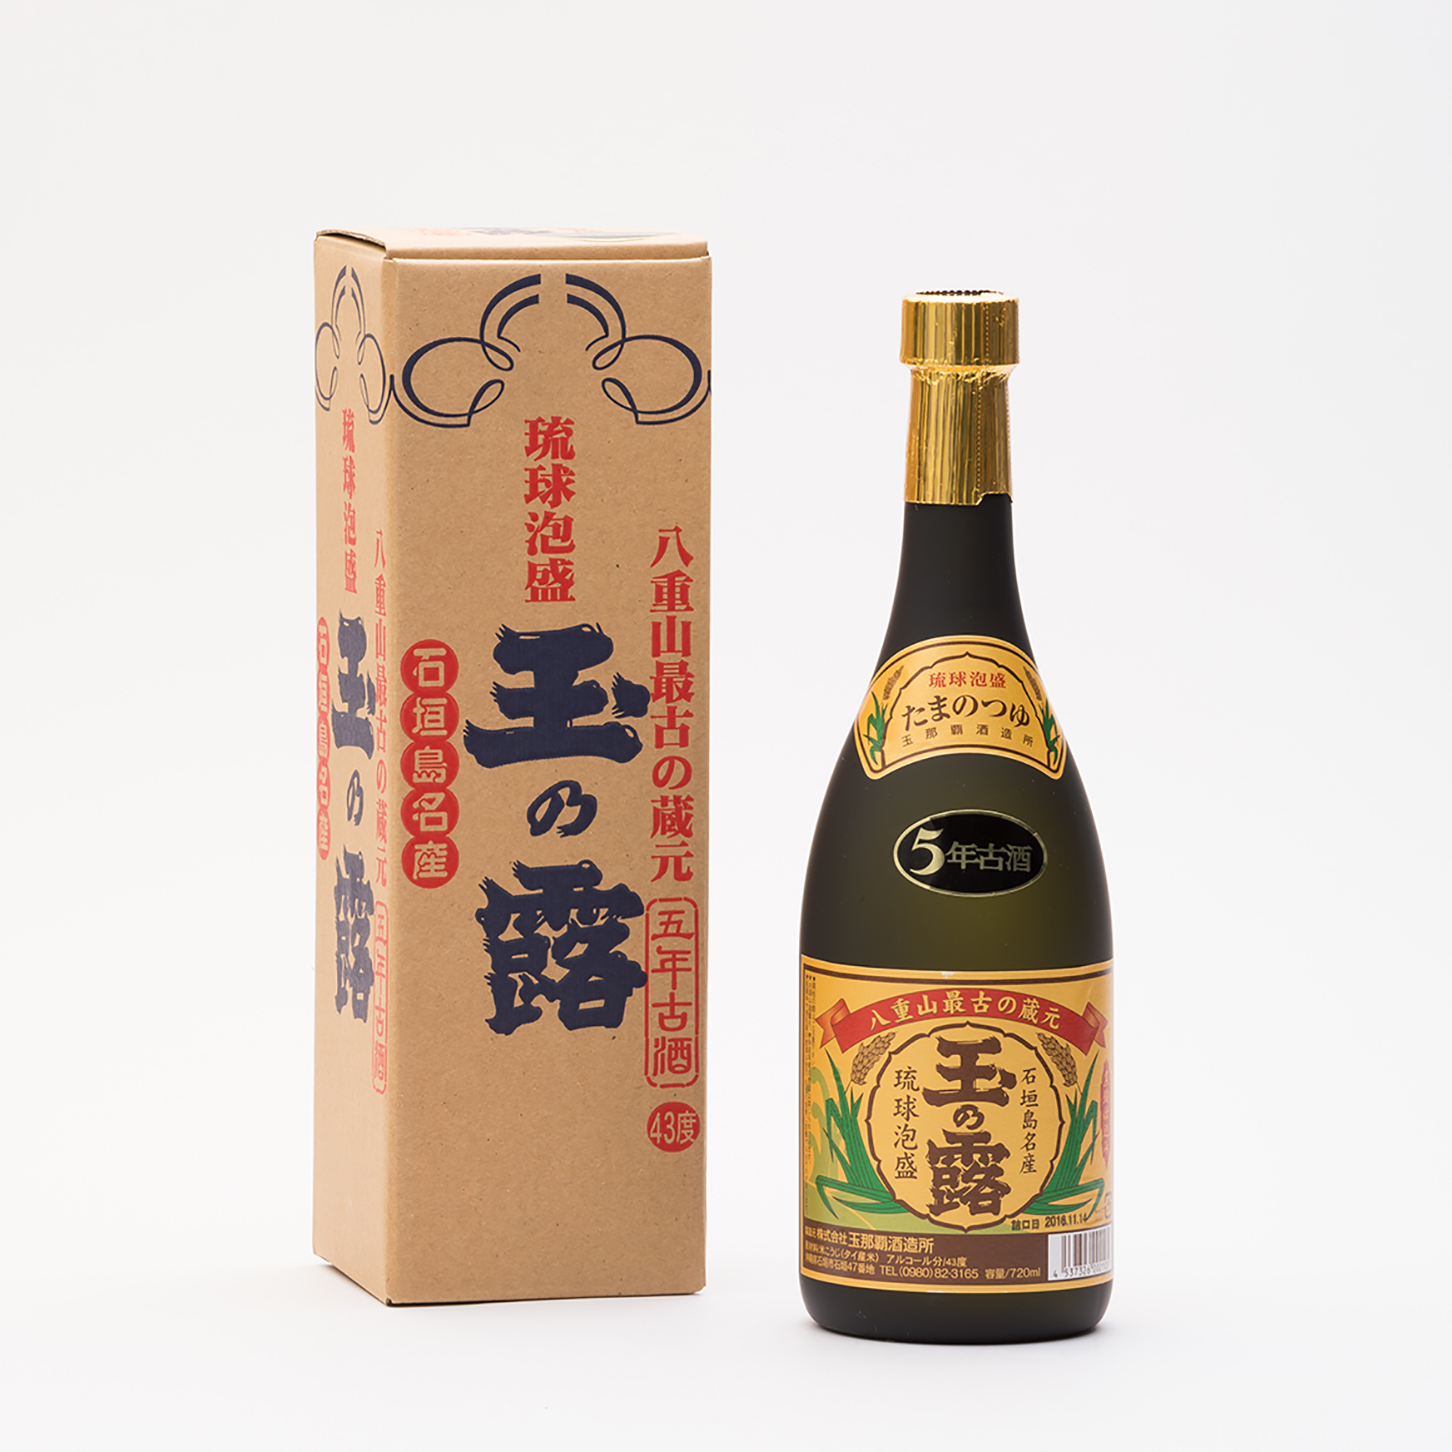 玉の露 5年古酒 金 泡盛 43度 4合瓶(720ml)商品詳細ページ | 沖縄CLIP 